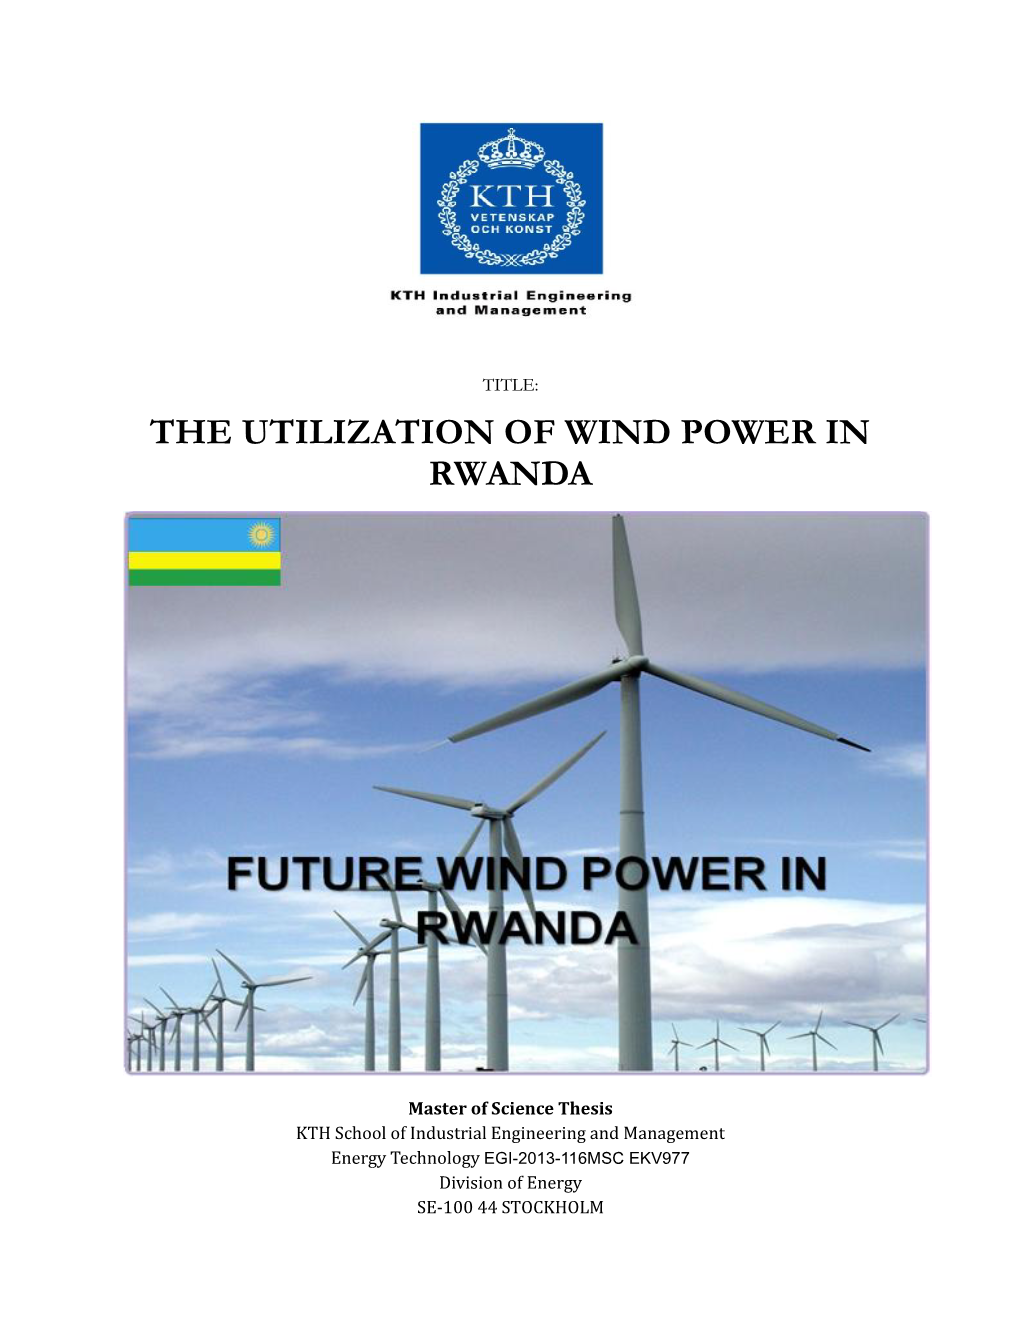 The Utilization of Wind Power in Rwanda